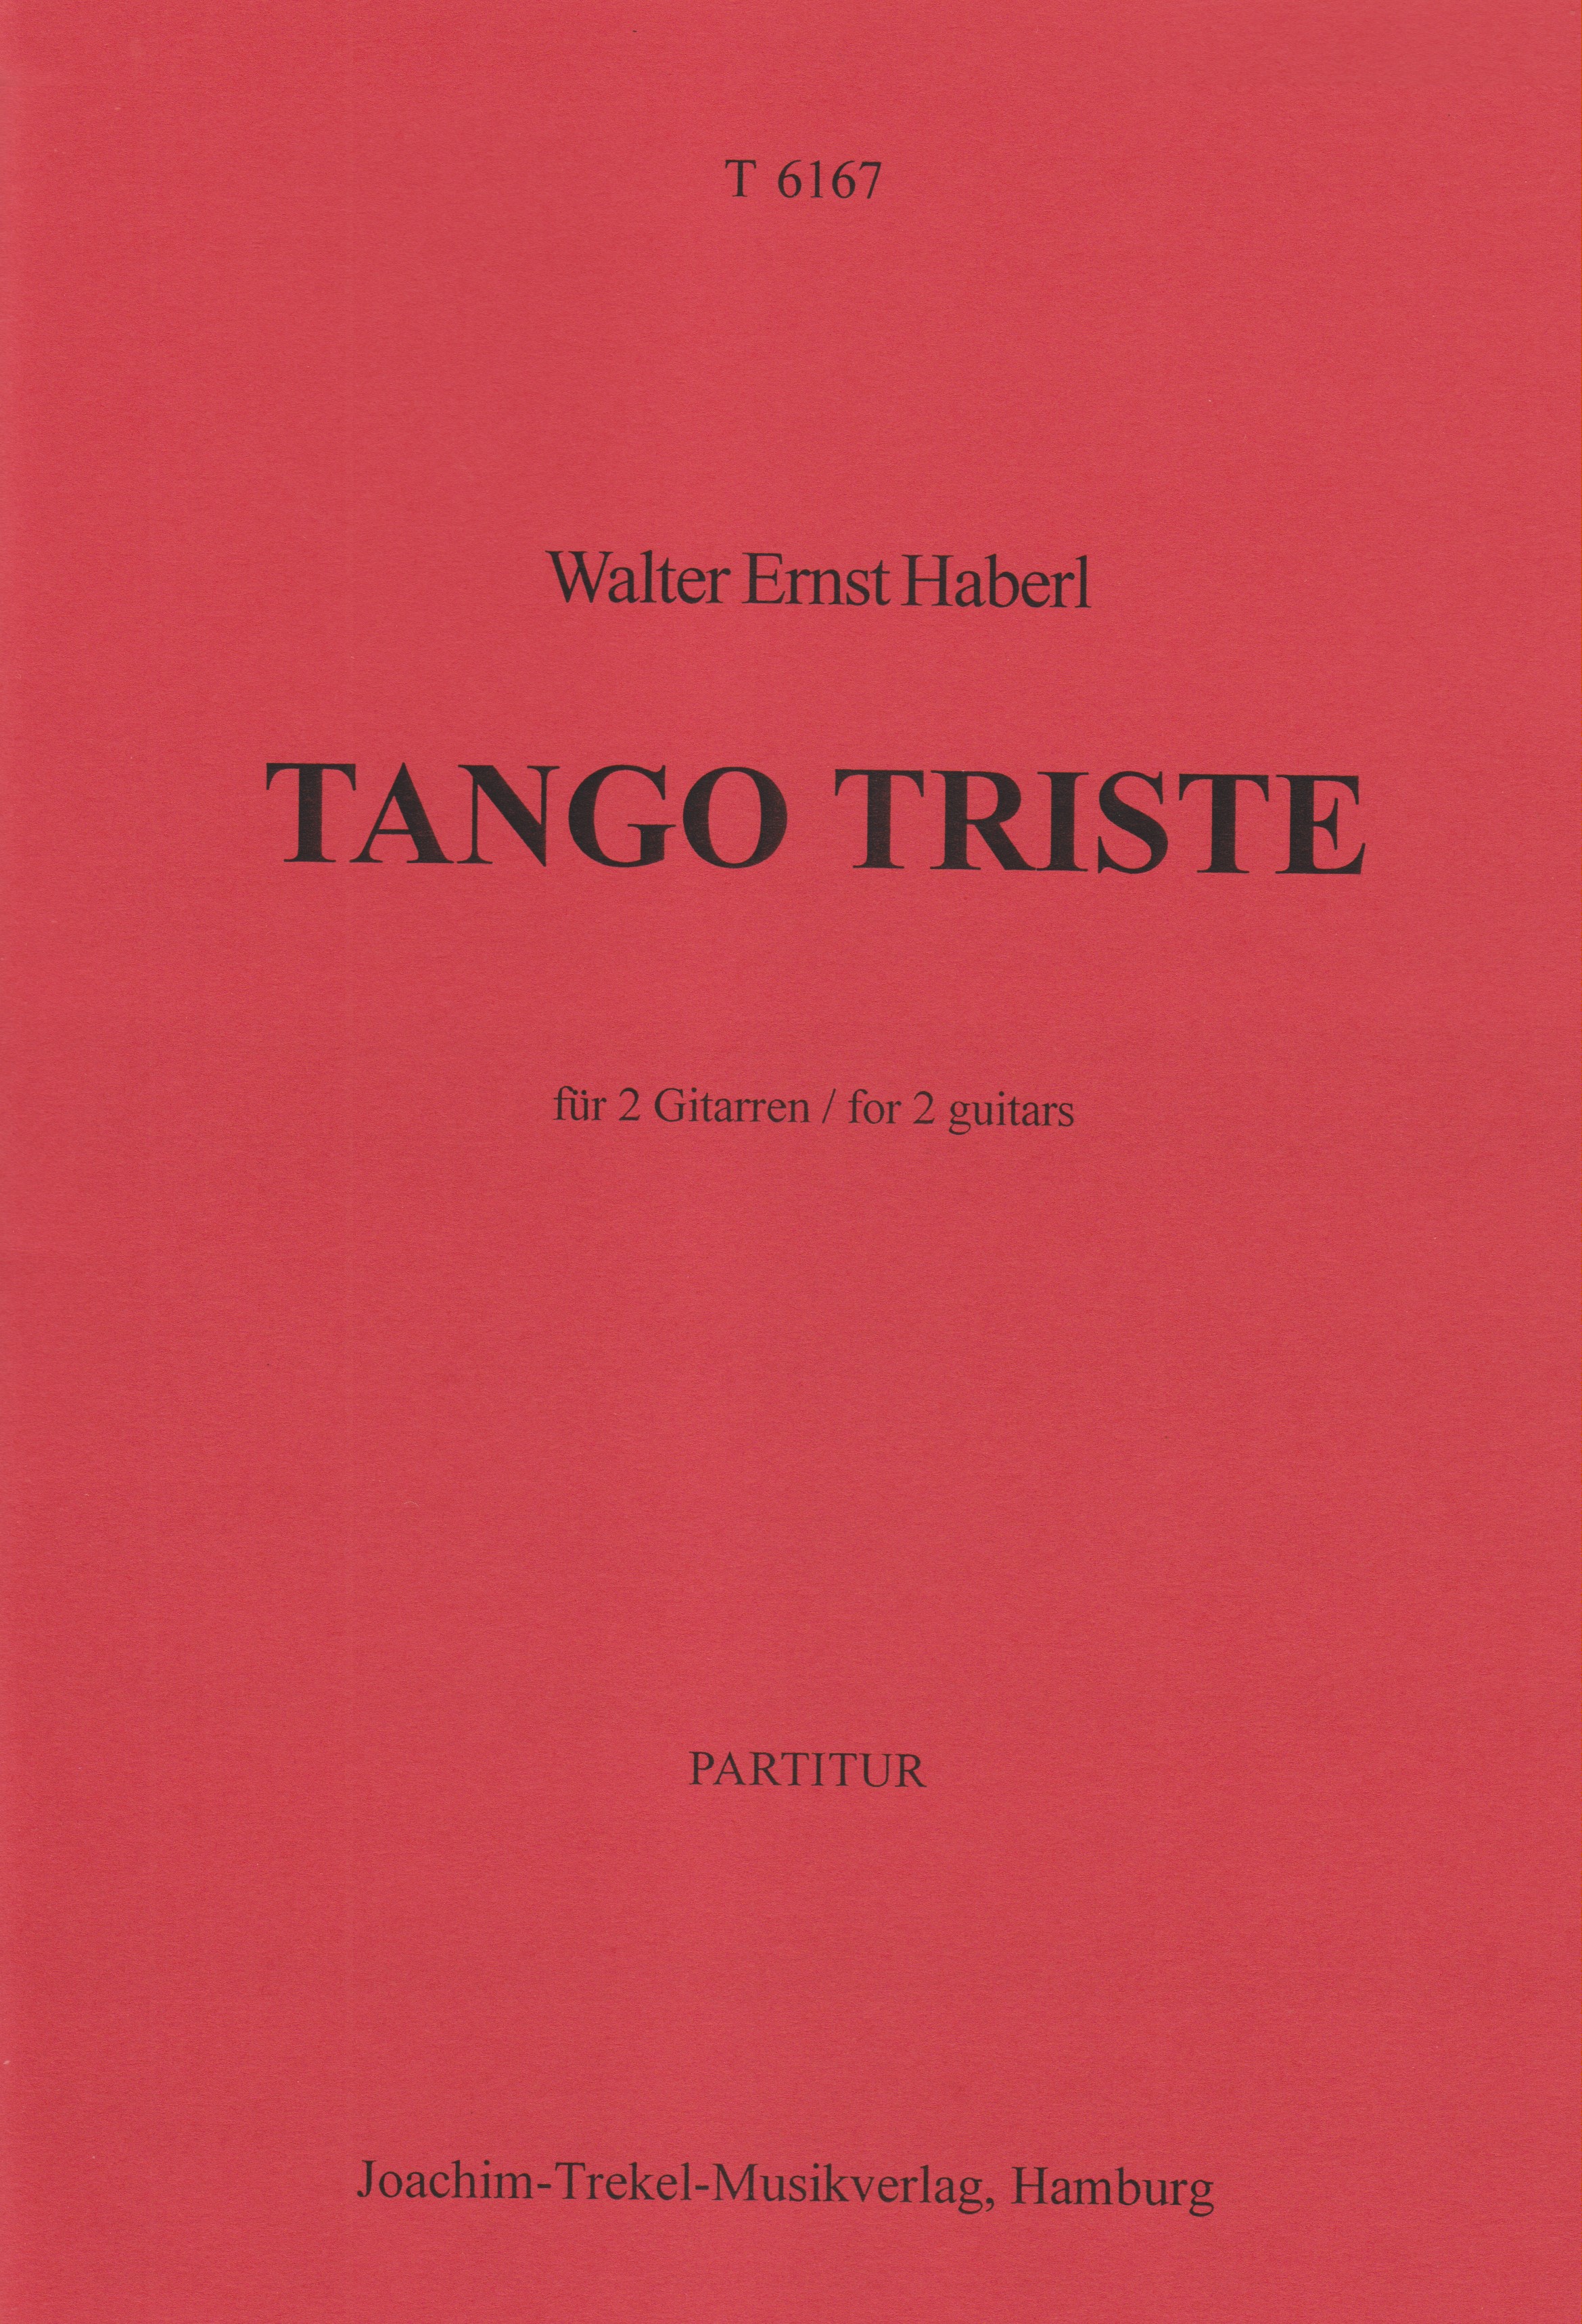 Tango Triste